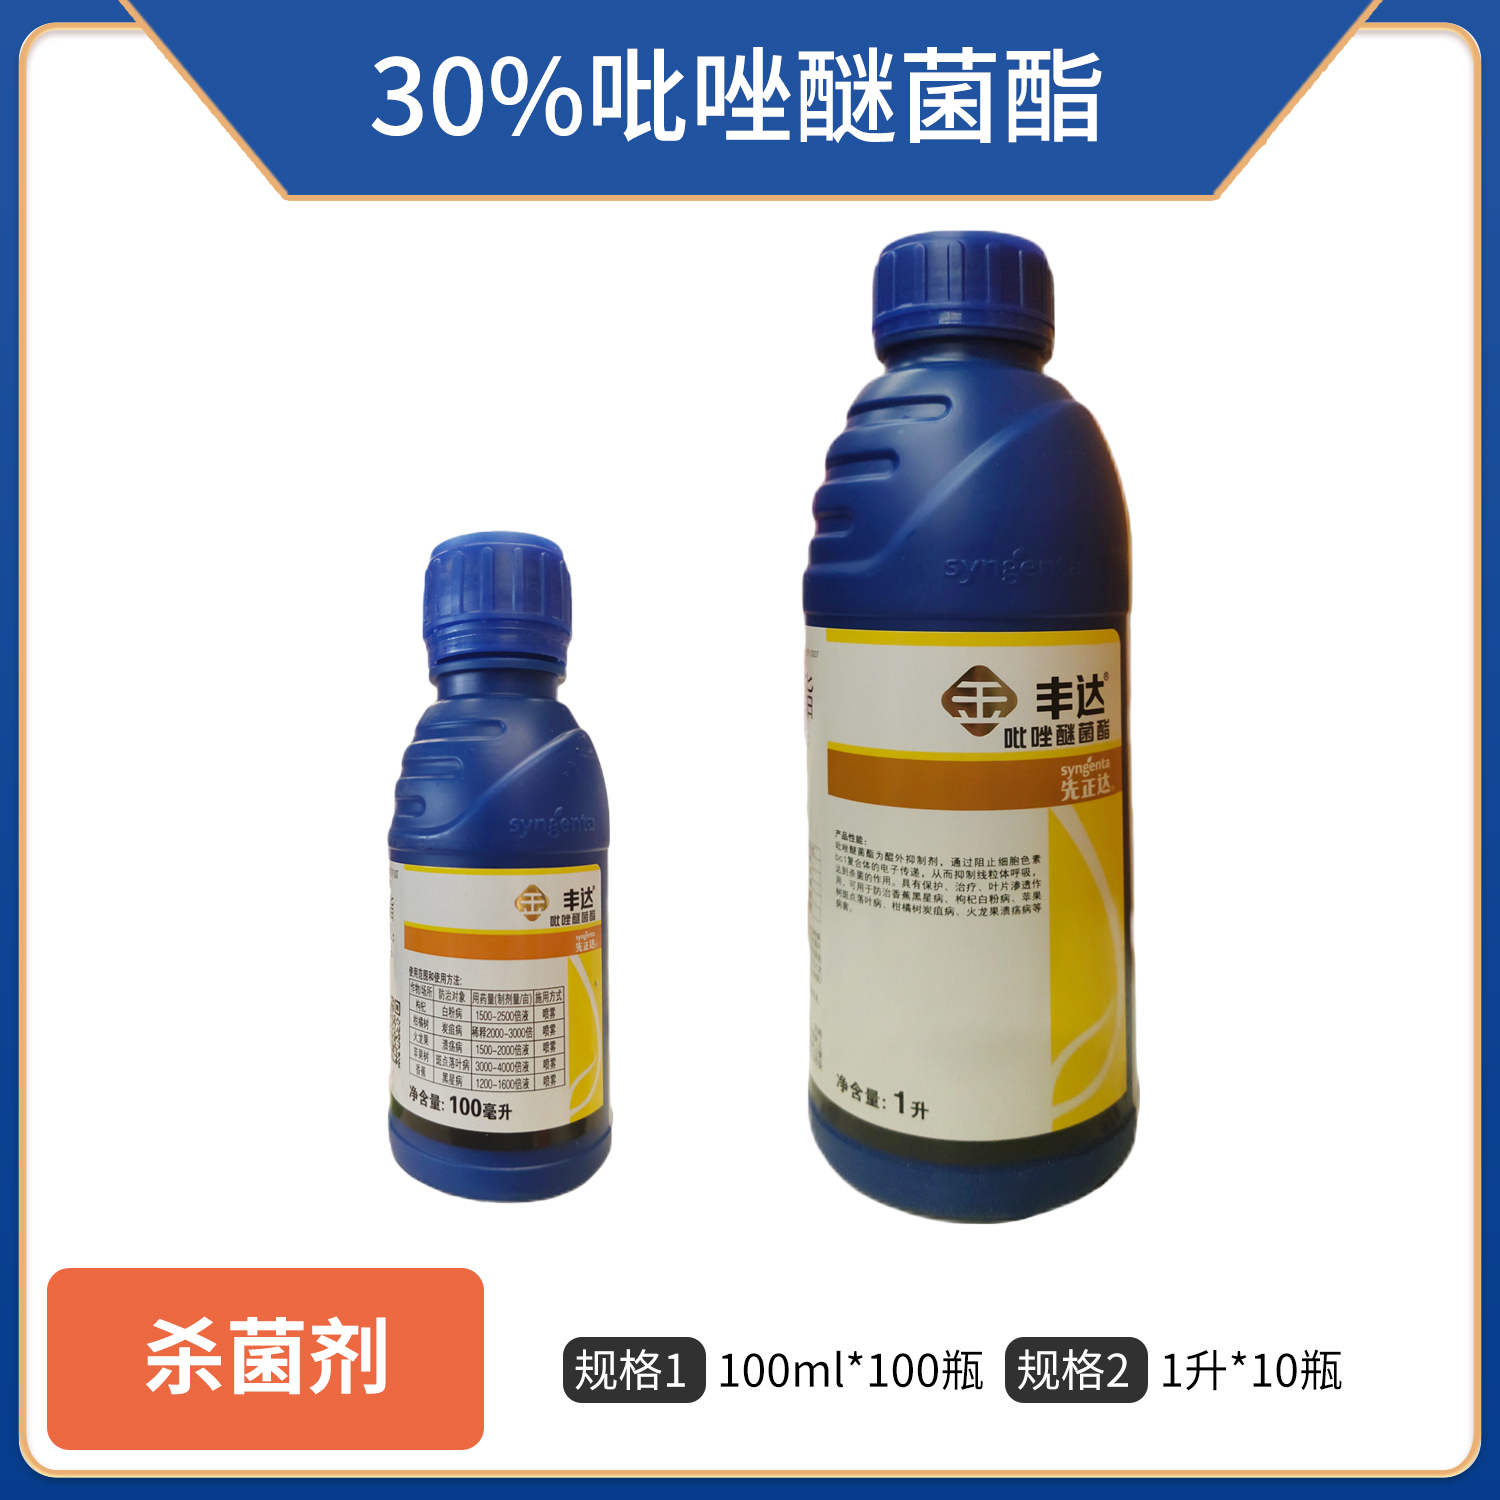 中国先正达丰达金选-30%吡唑醚菌酯